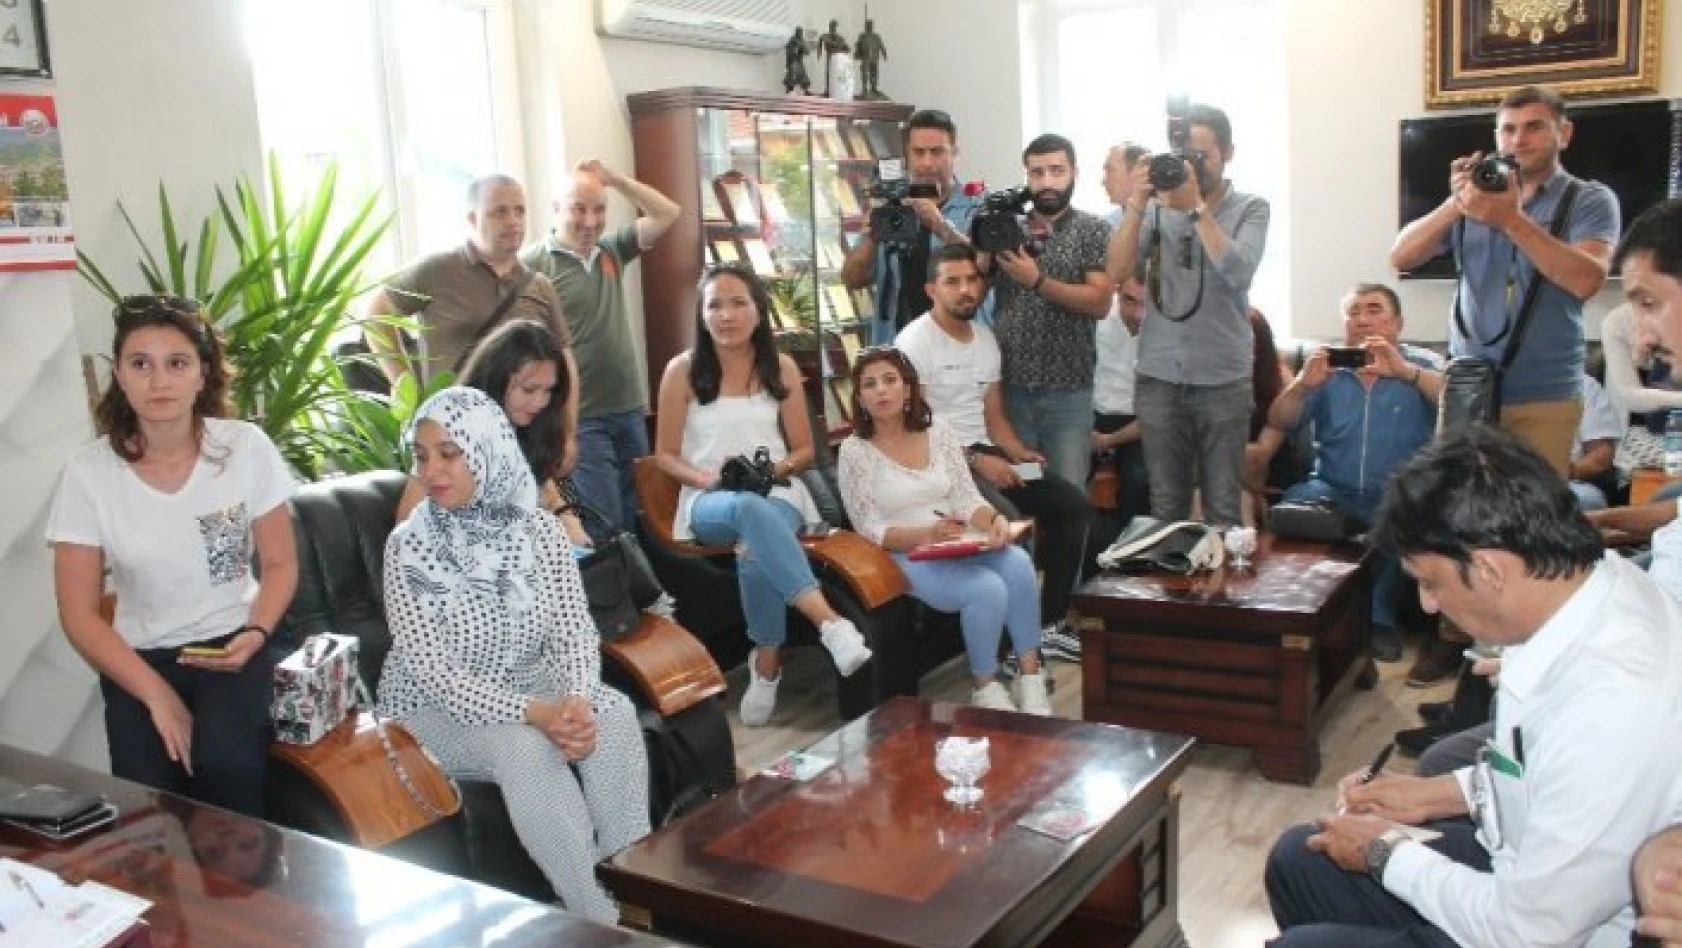 11 farklı ülkeden 60 yabancı gazeteci Tosya ilçesini ziyaret etti